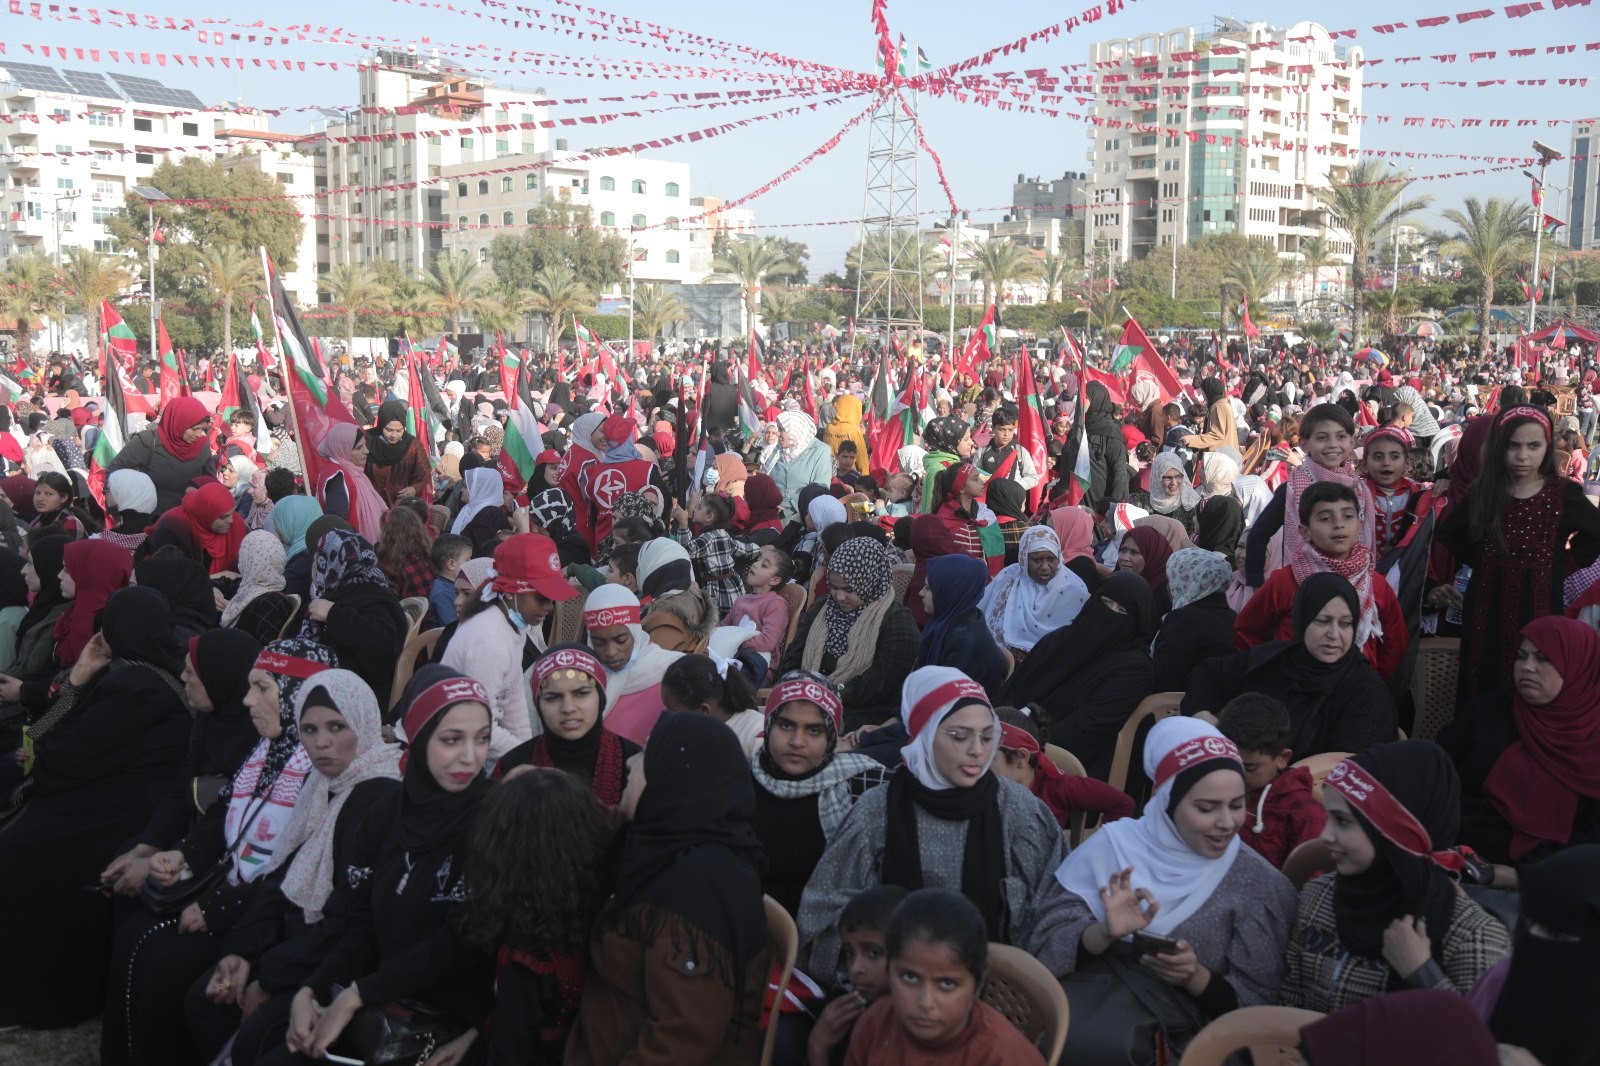 عشرات الآلاف يُشاركون في المهرجان الوطني (انطلاقتنا مقاومة) في ساحة الكتيبة بمدينة غزة لإحياء ذكرى انطلاقة الجبهة الشعبيّة لتحرير فلسطين الـ55. 8.jpg